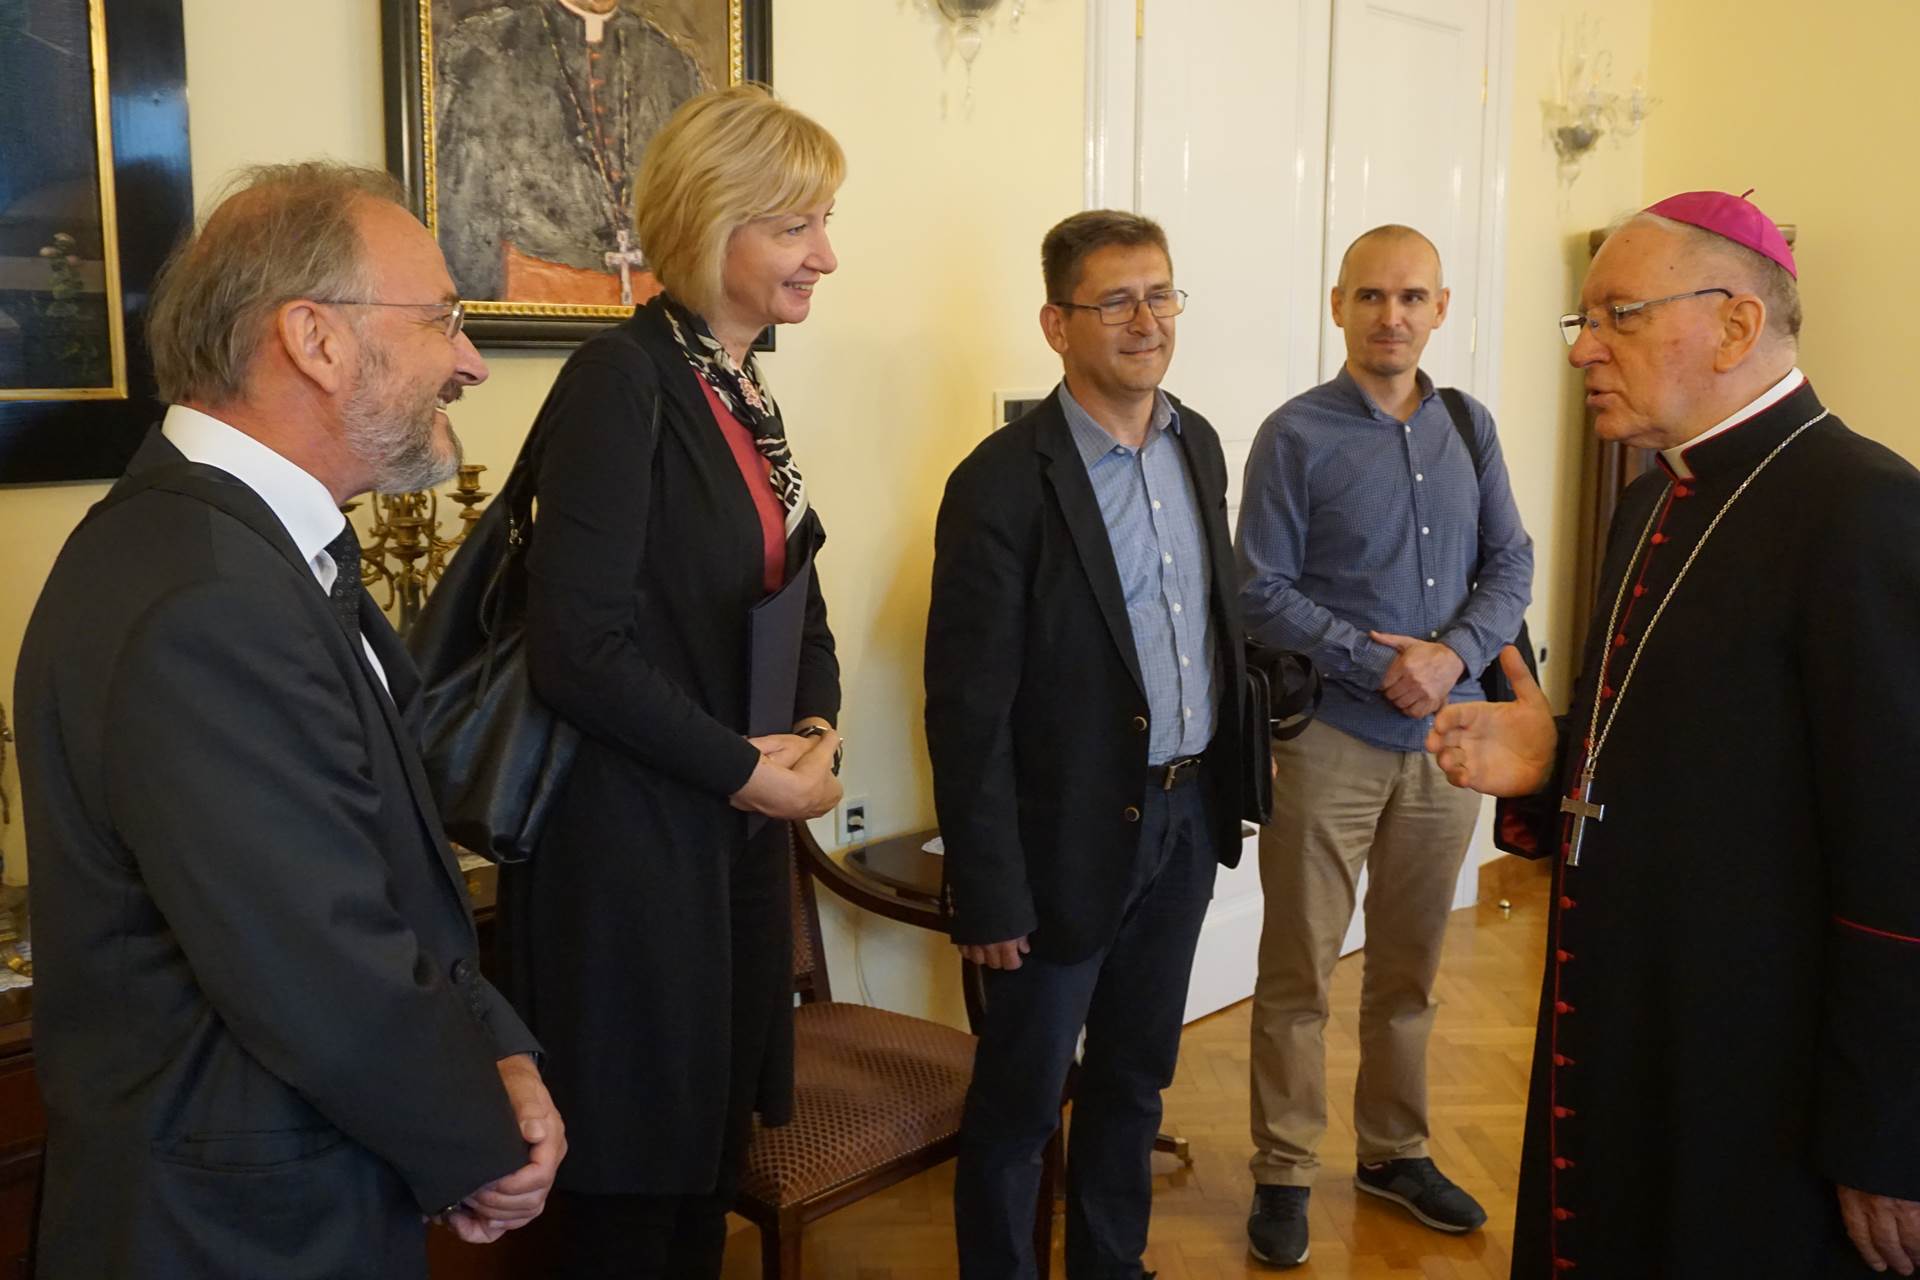 Požega.eu | Državni tajnik Ministsrstva kulture Ivica Poljičak u radnoj posjeti Požeške biskupije